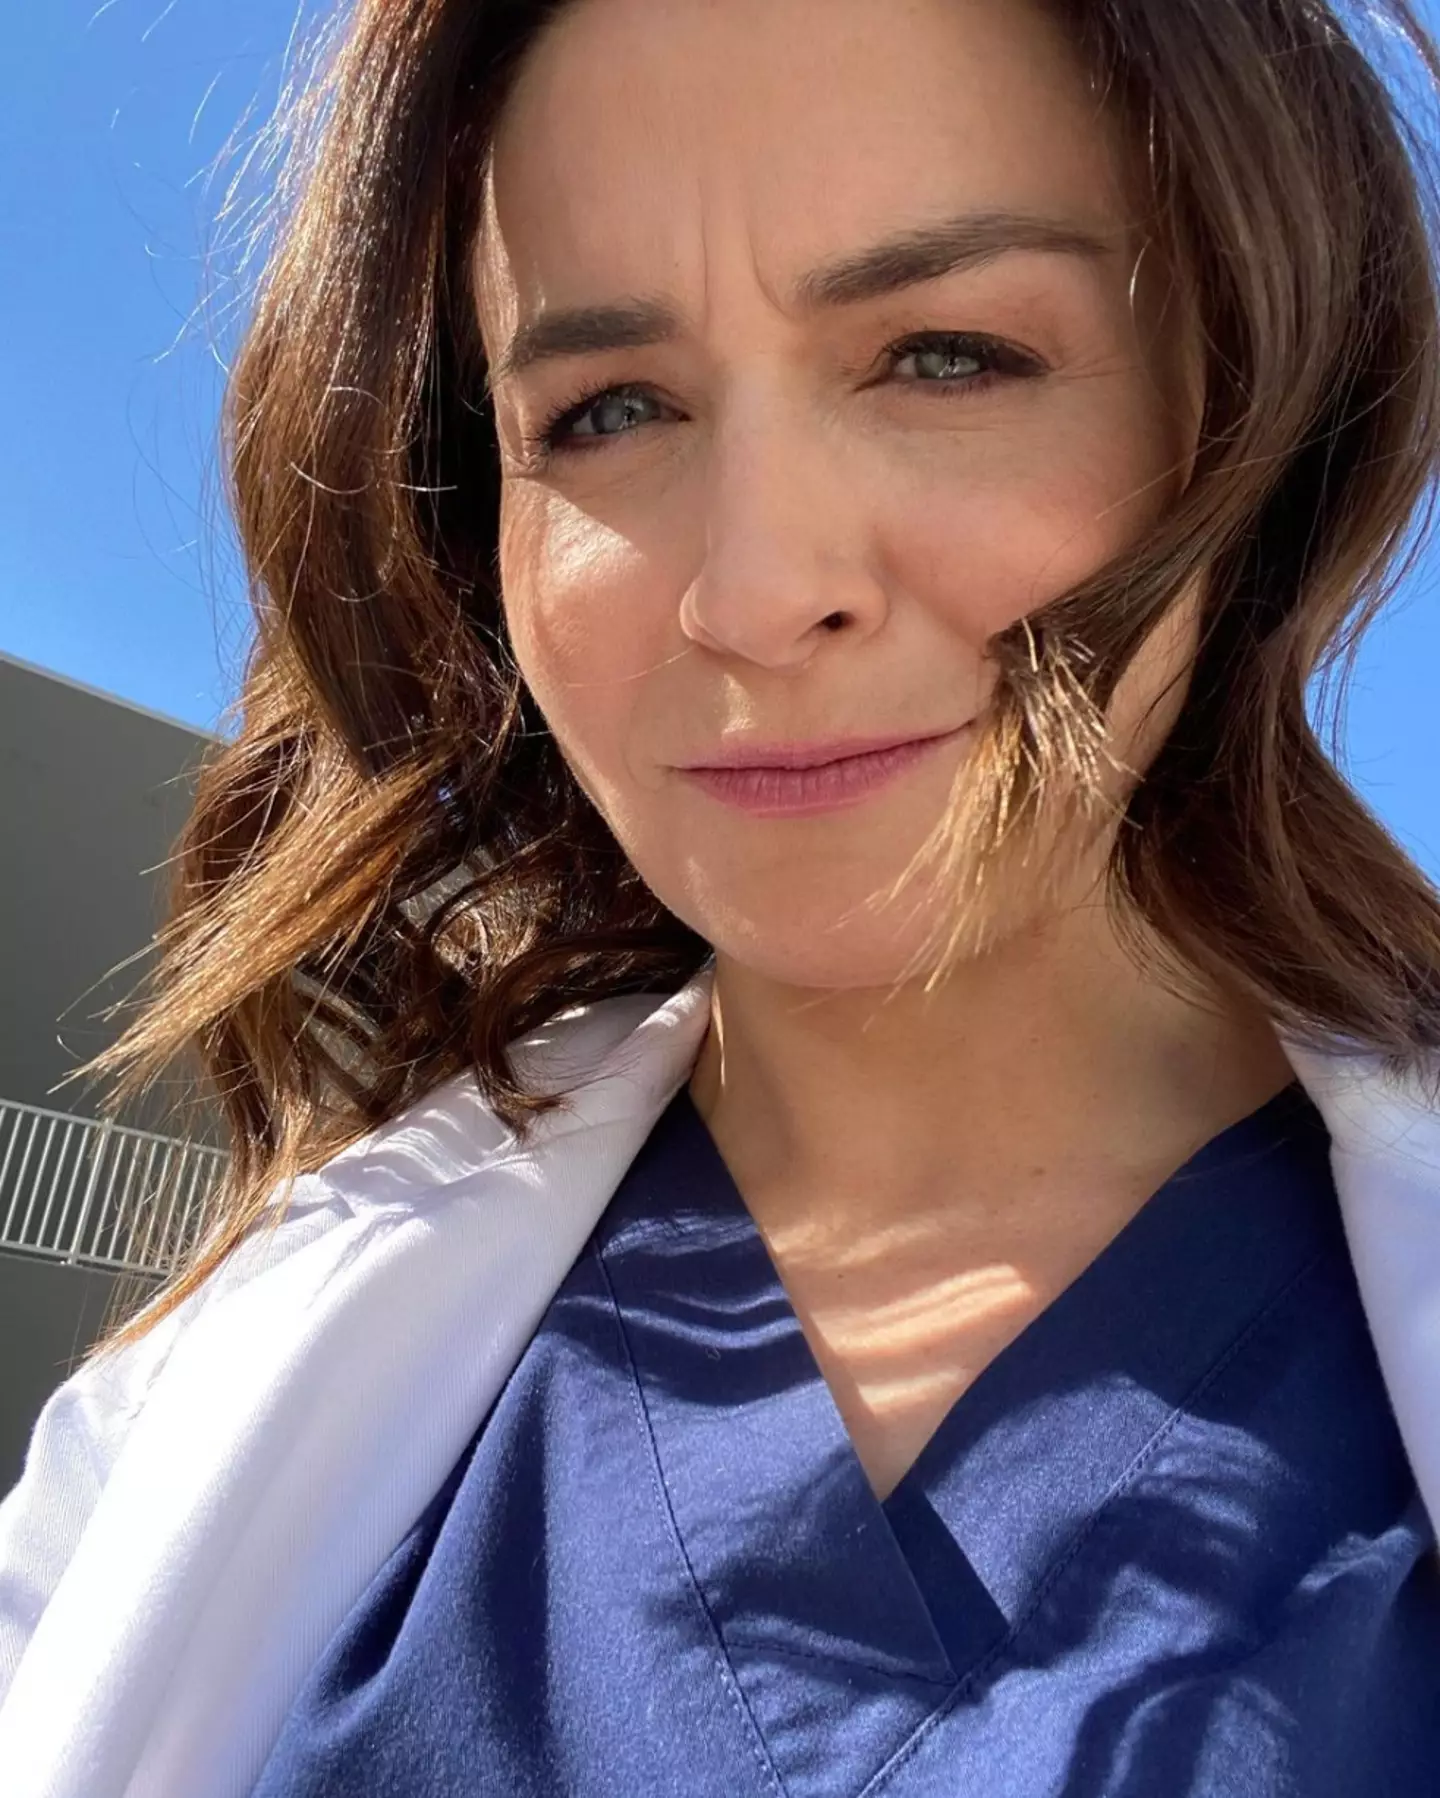 Scorsone plays Dr Amelia Shepherd in Grey's Anatomy.